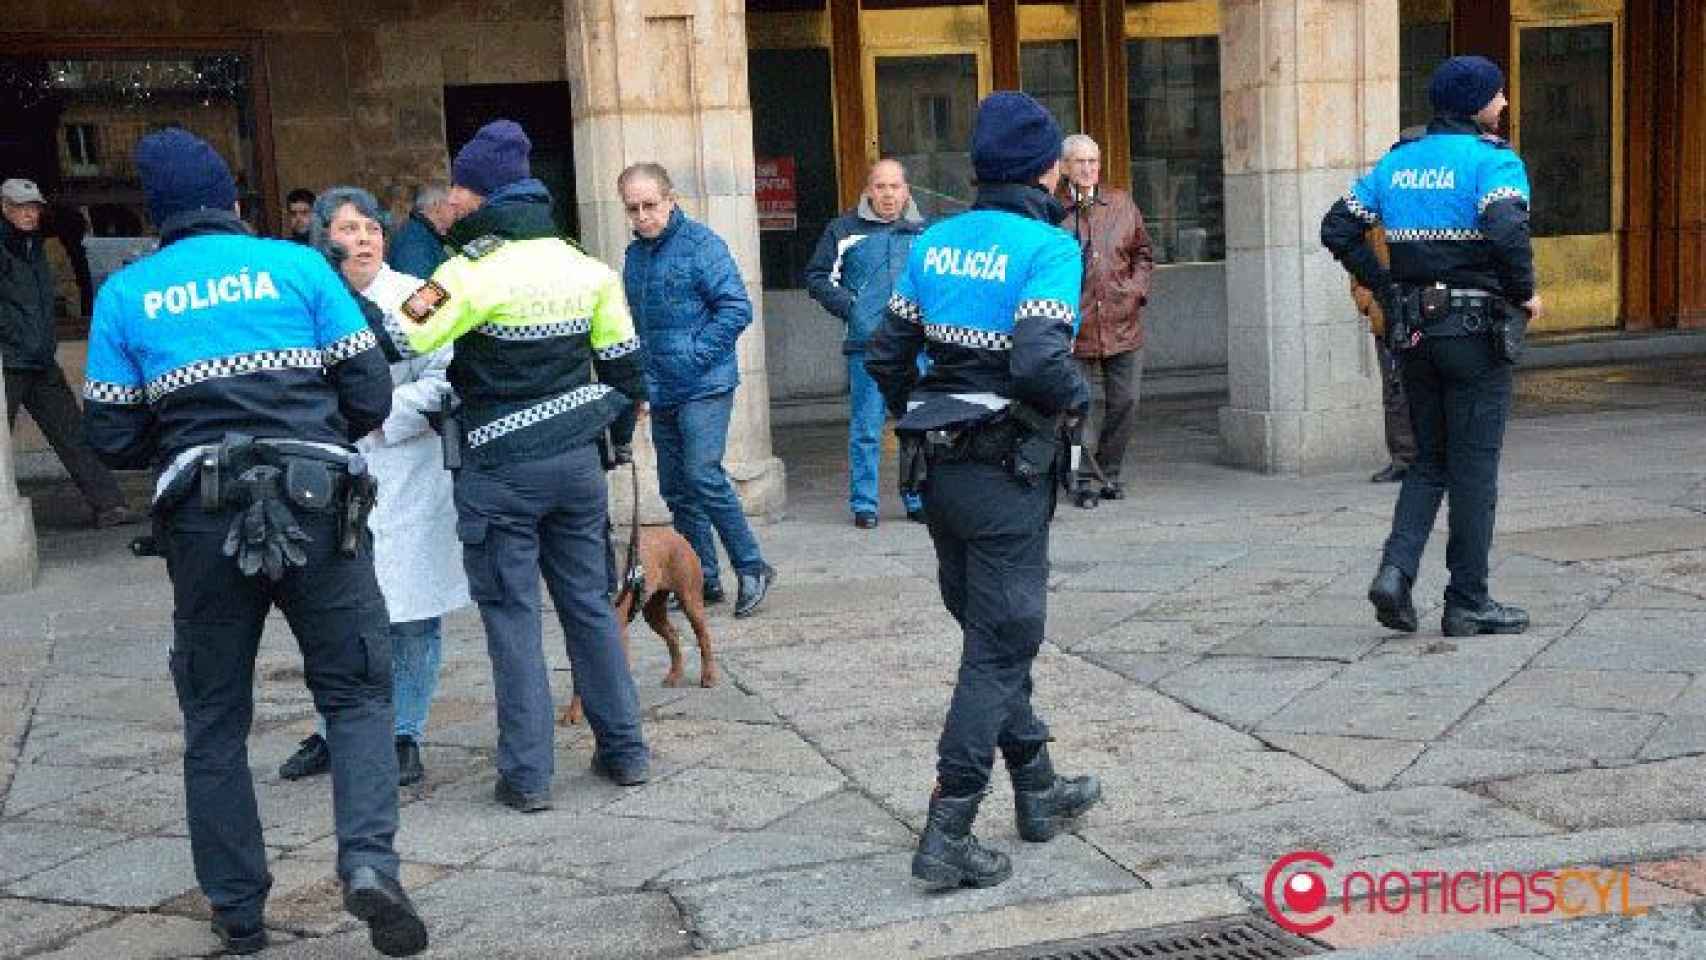 Unidad-canina-policia-local-salamanca